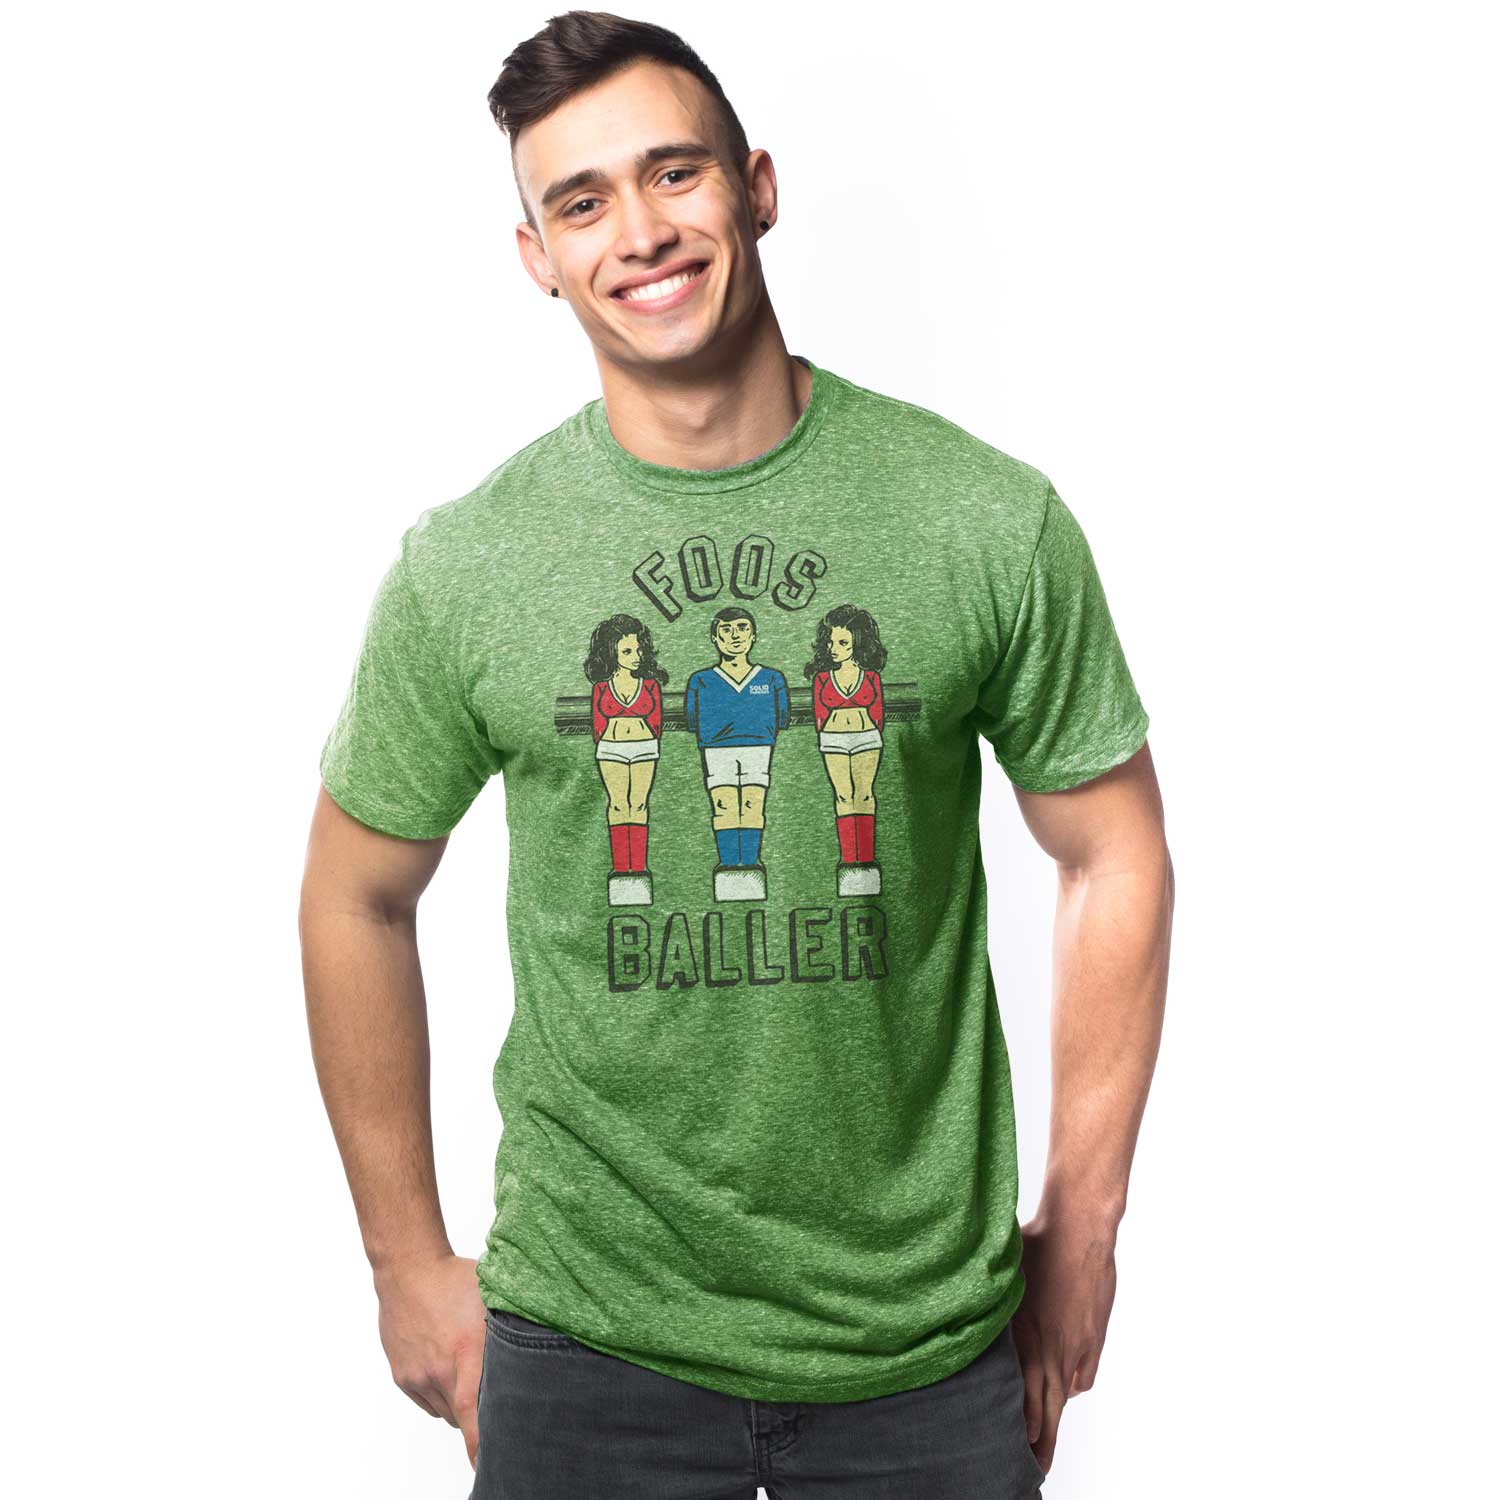 Vintage Derek Jeter Shirt T-Shirt Sweatshirt - TourBandTees